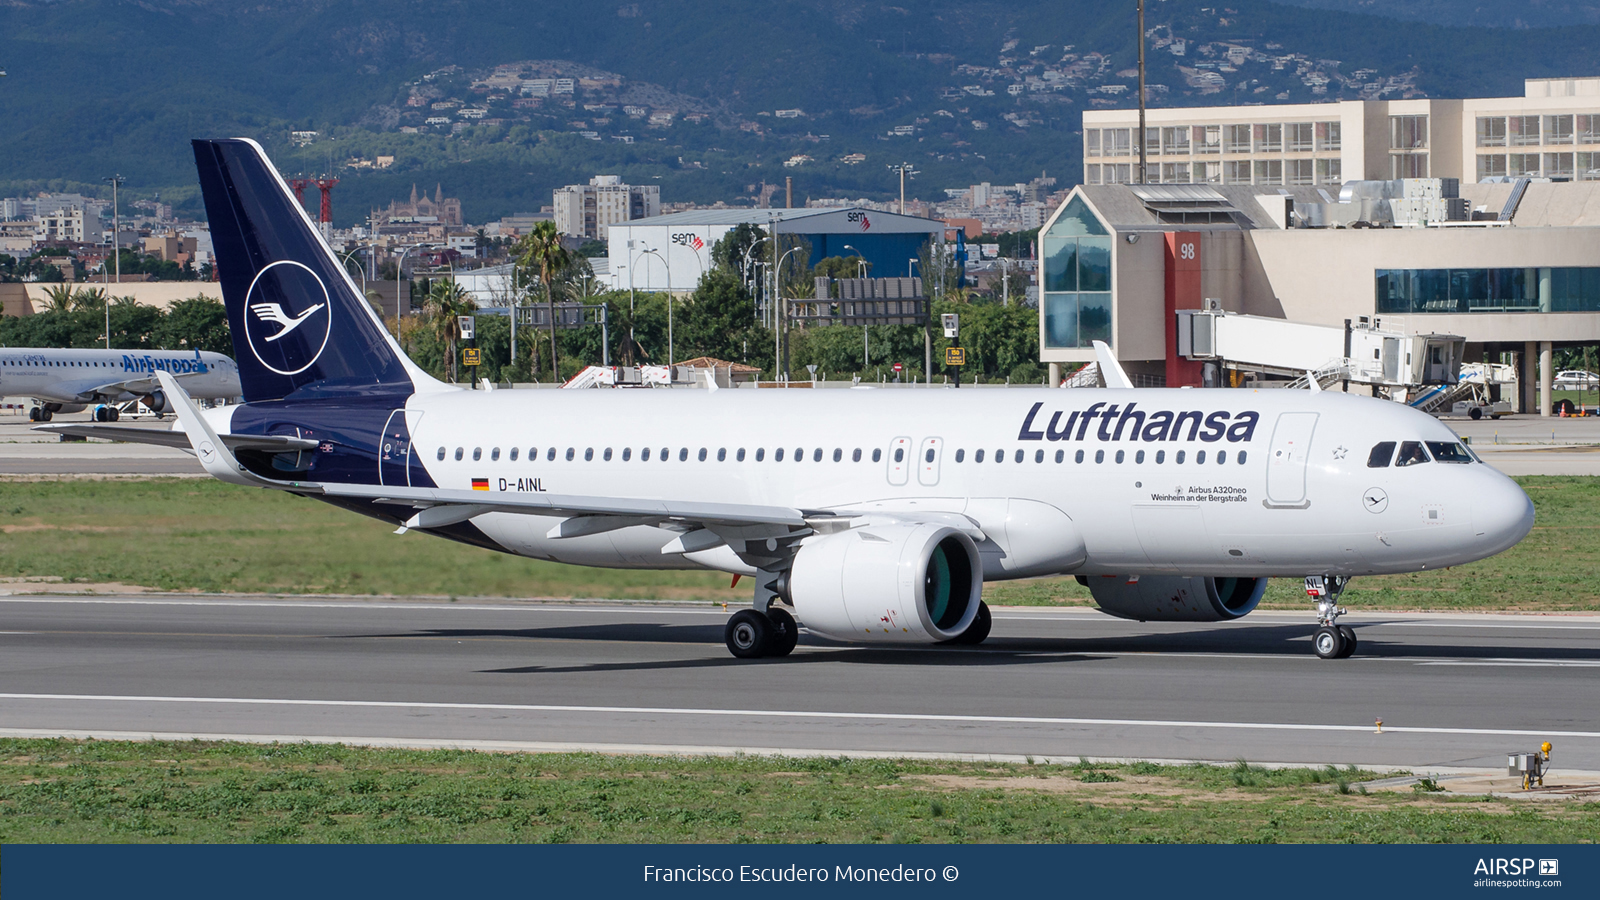 Lufthansa  Airbus A320neo  D-AINL